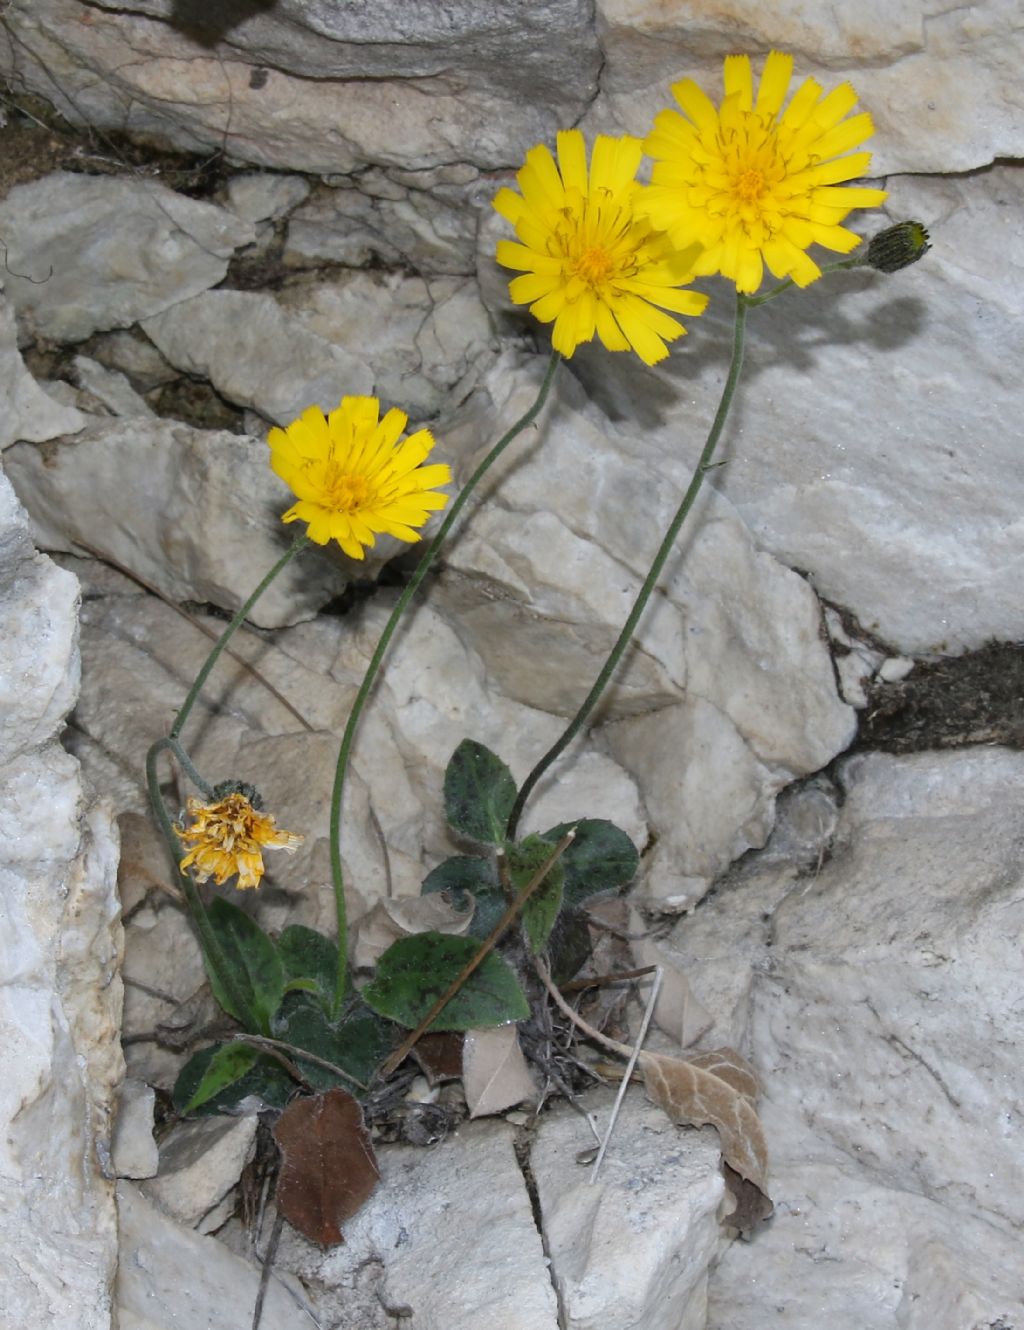 Asteracea su rupe rocciosa: Hieracium sp.